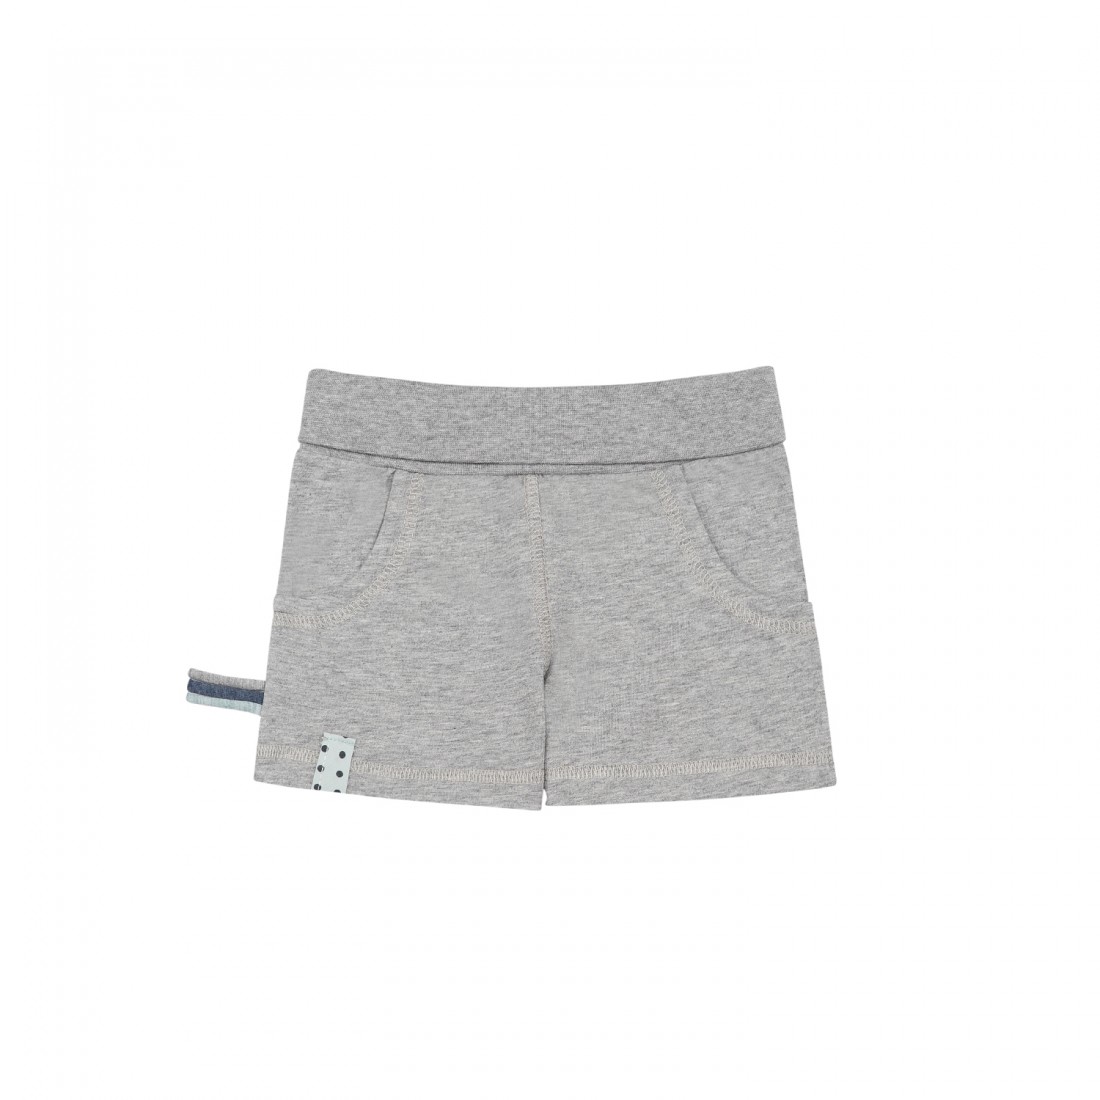 OrganicEra Organic Shorts, Grey